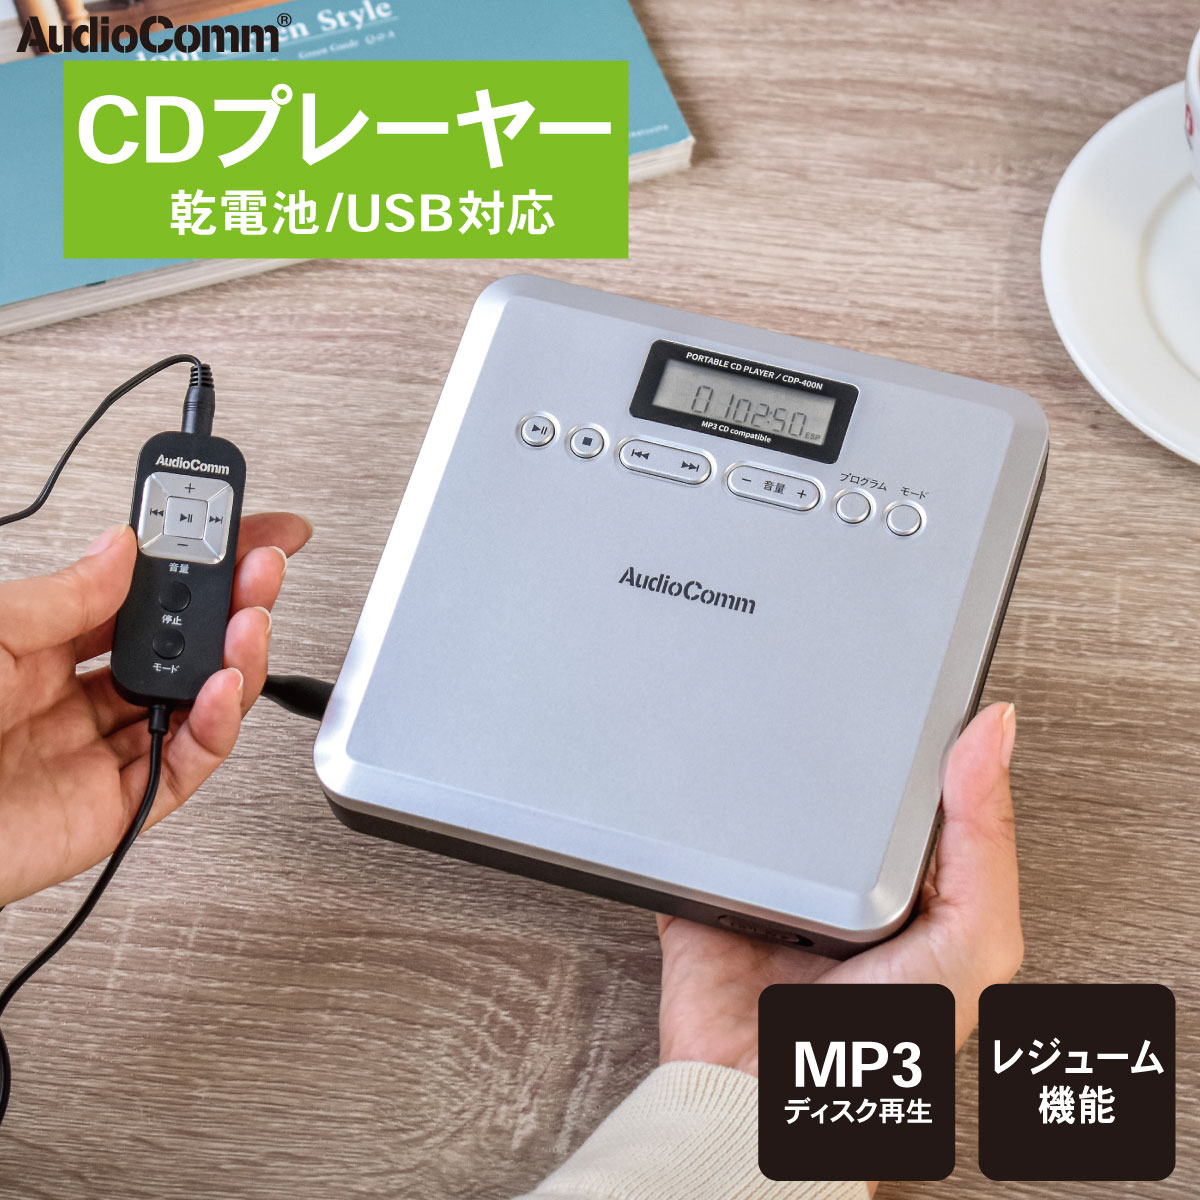 AudioComm CDプレーヤー ポータブル MP3対応 